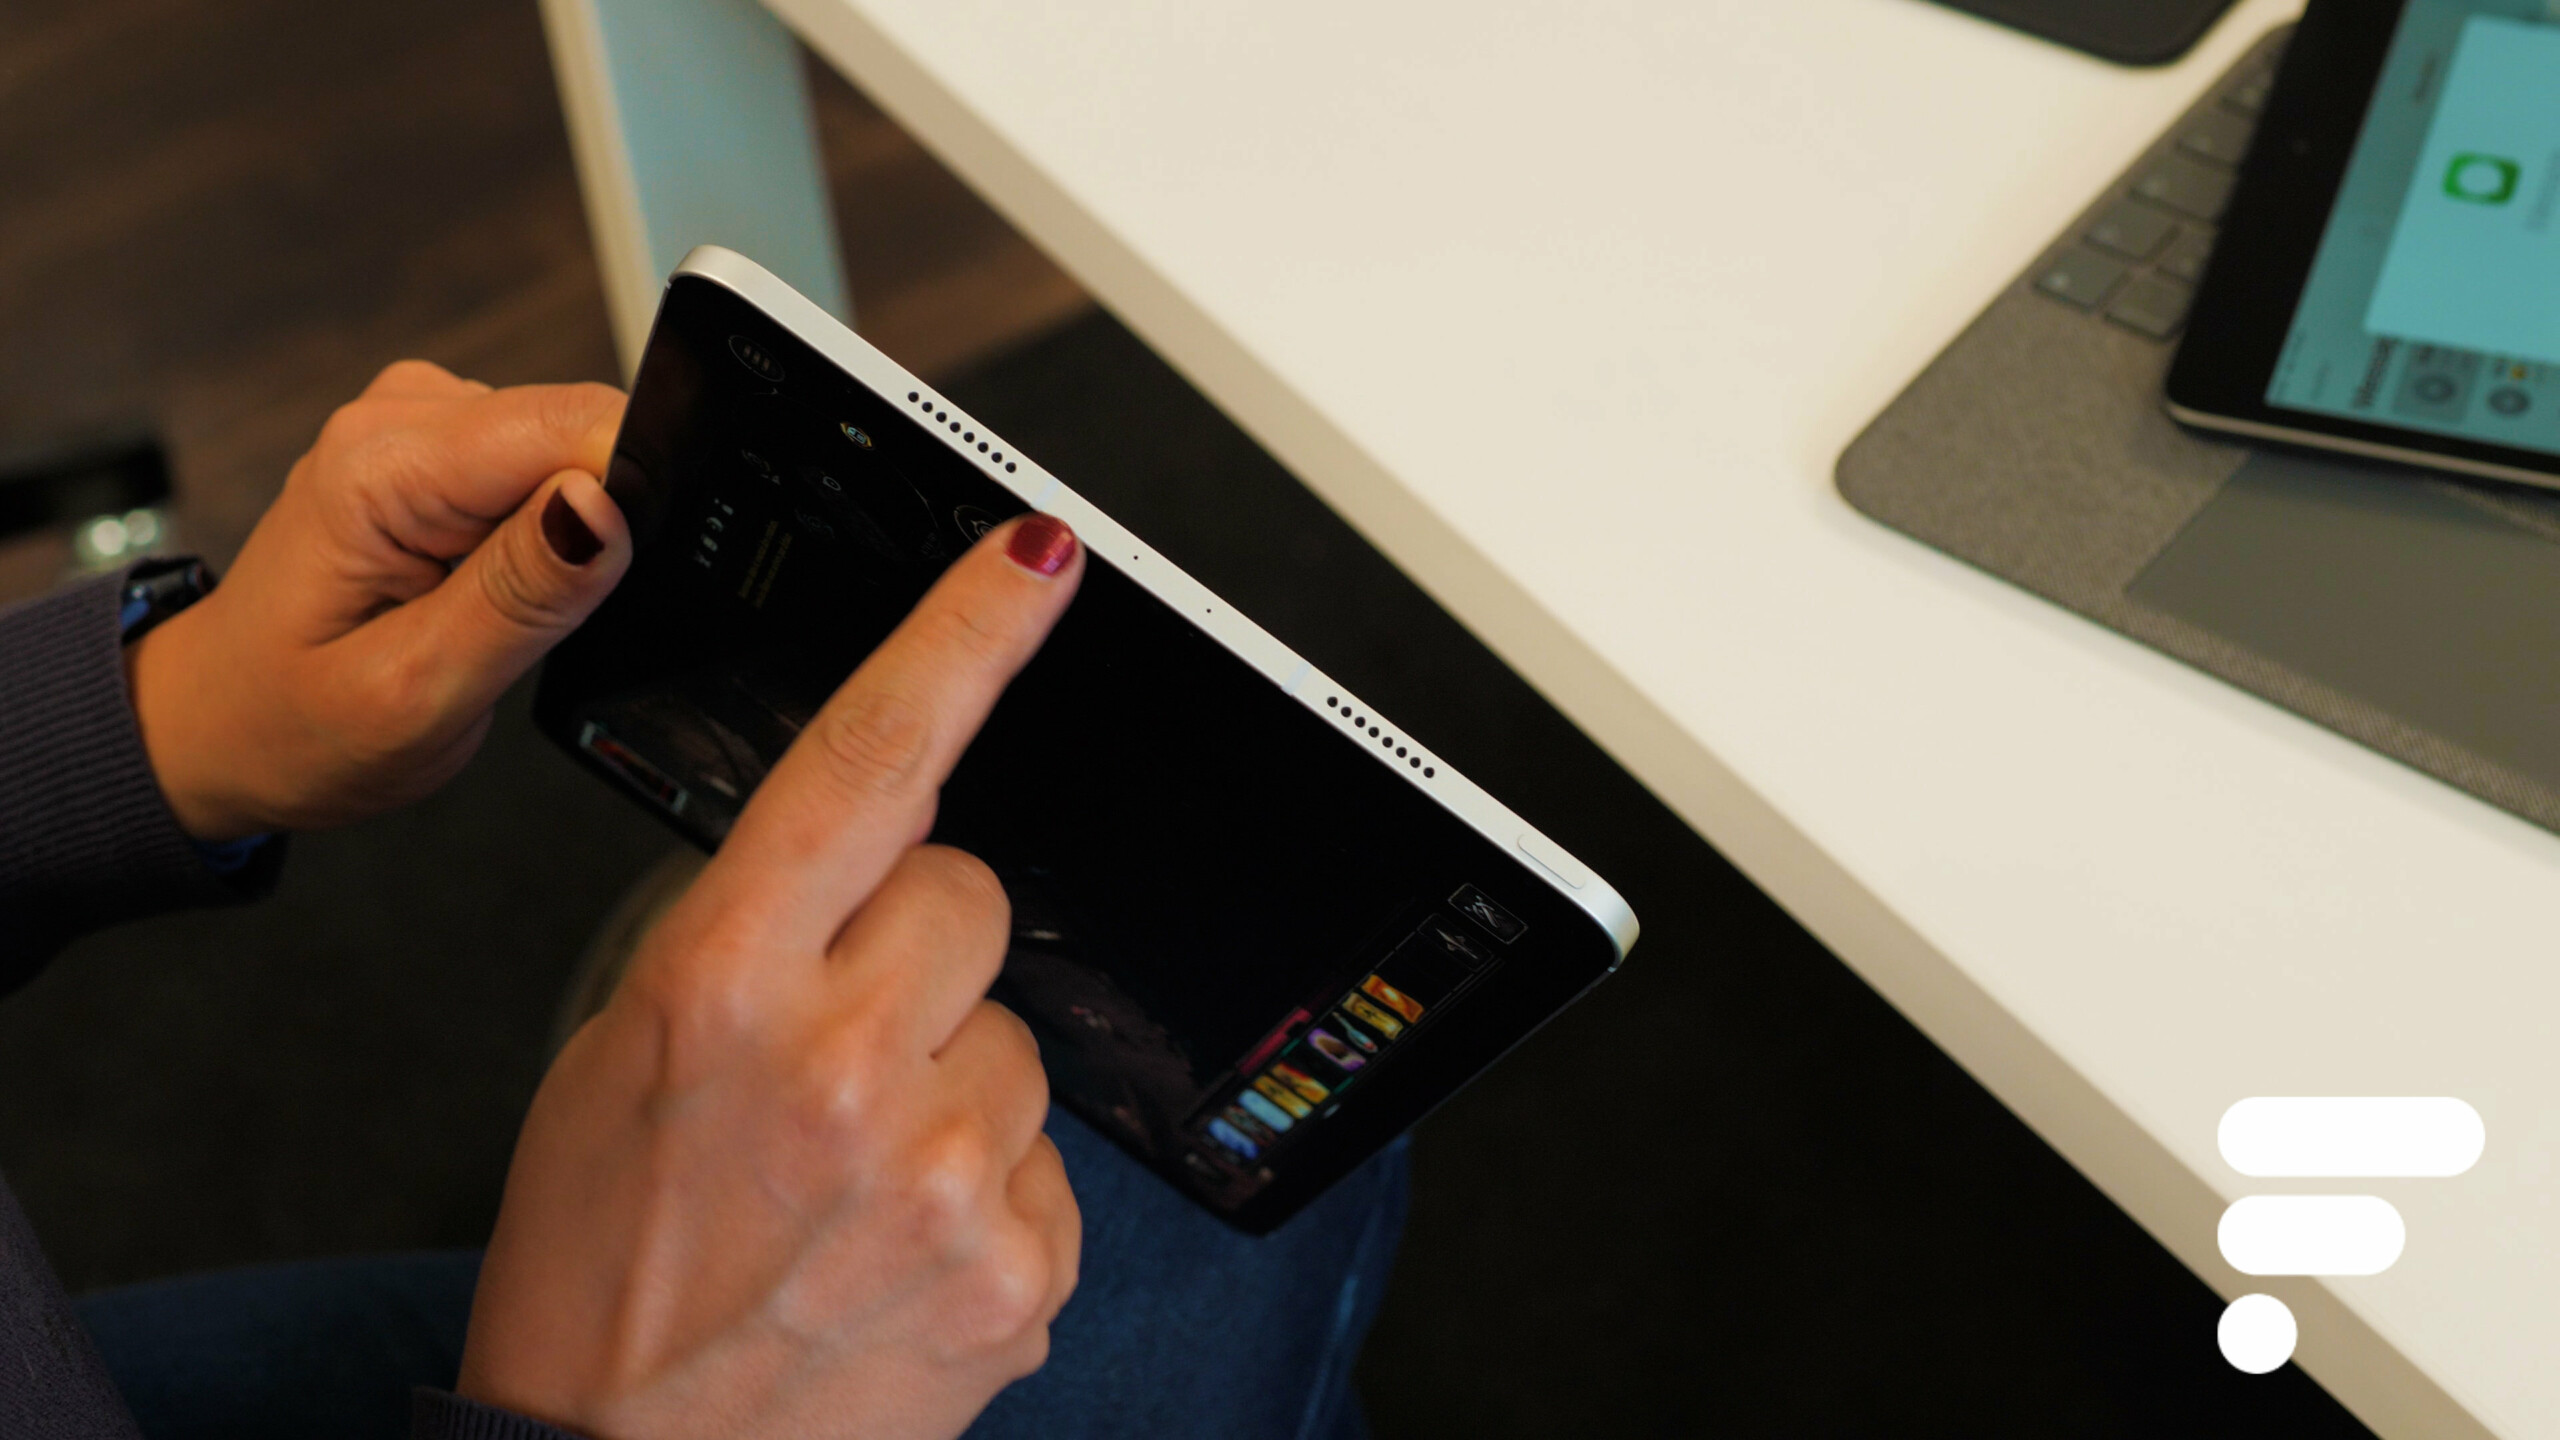 Lecteur Carte SIM iPad Air 3/Pro 3ème Génération